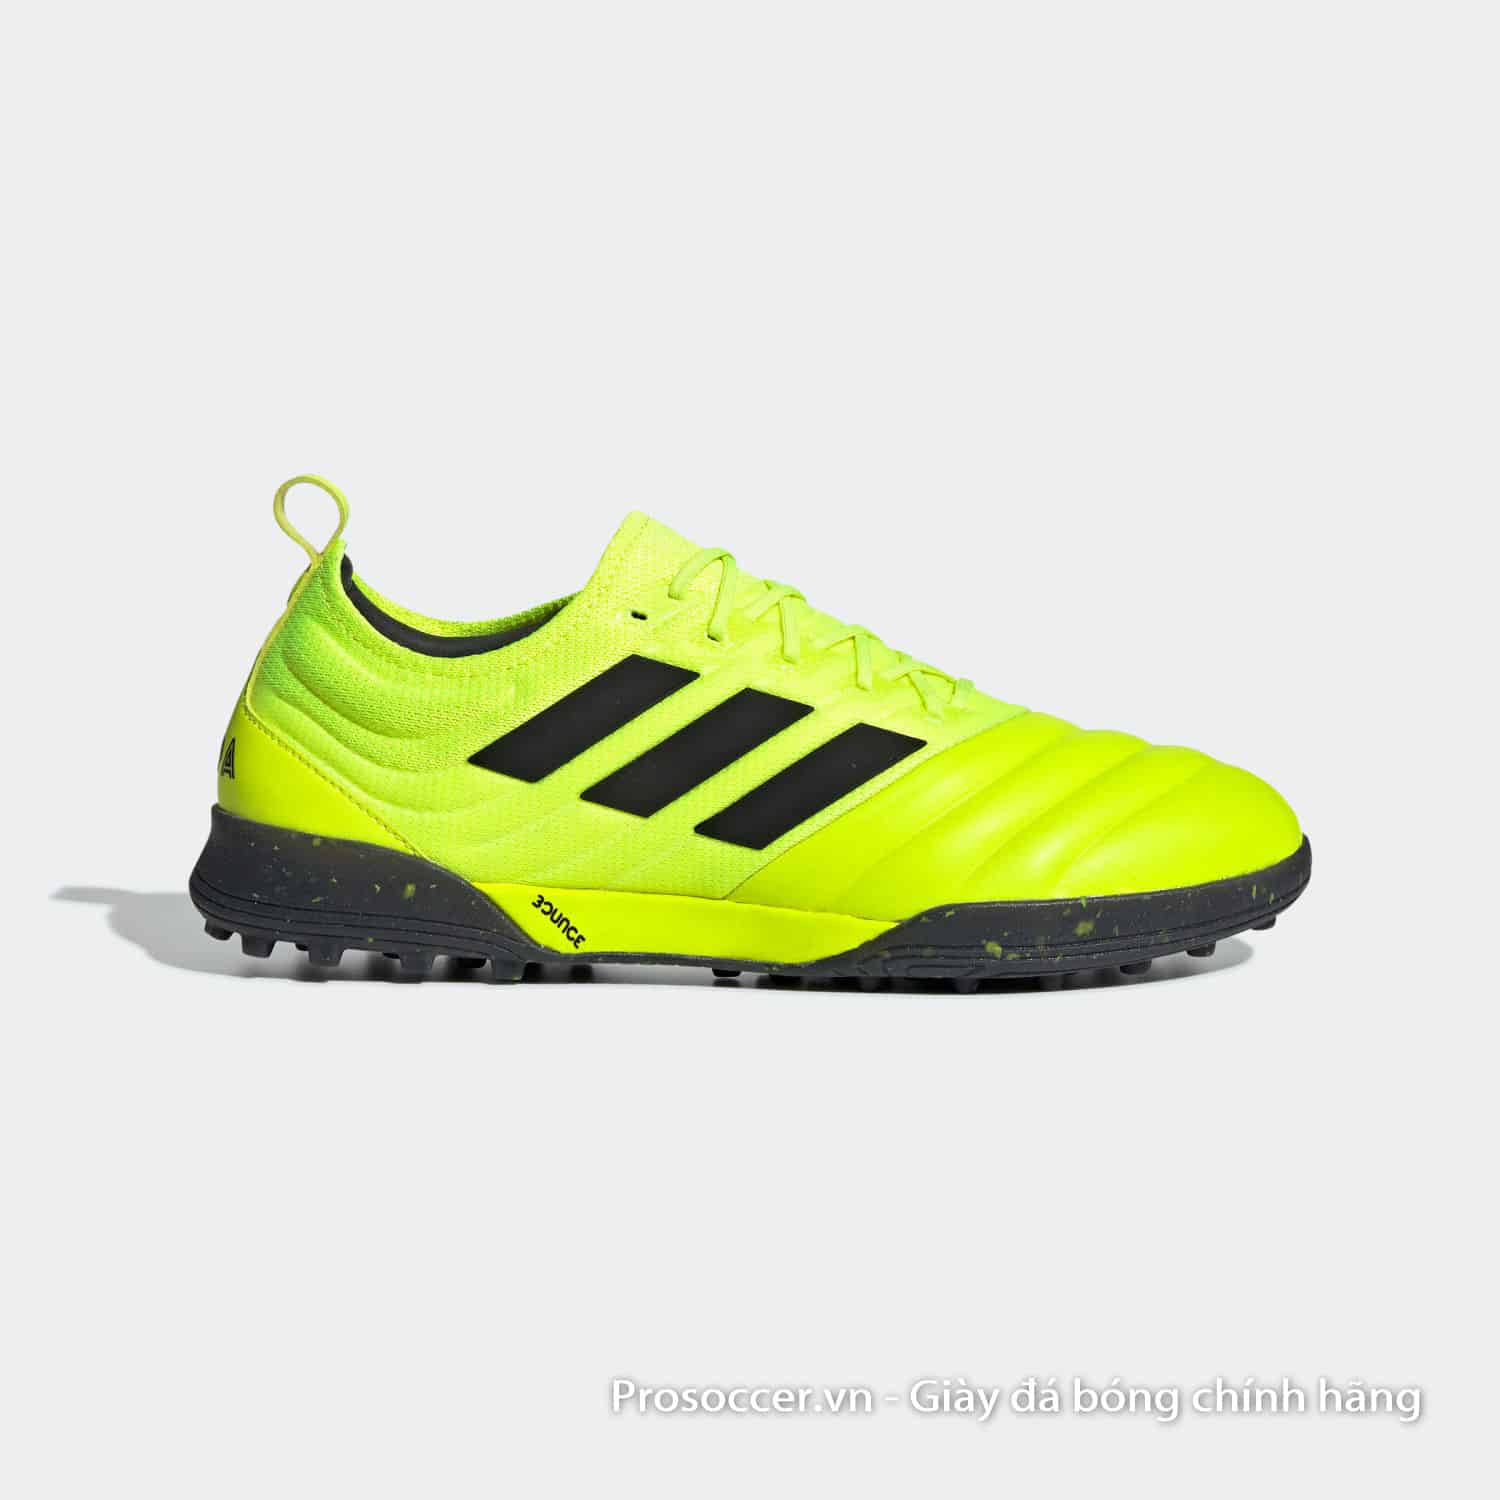 Copa 19.1 TF luôn là mẫu giày Top-End trên sân cỏ nhân tạo được yêu thích của Adidas